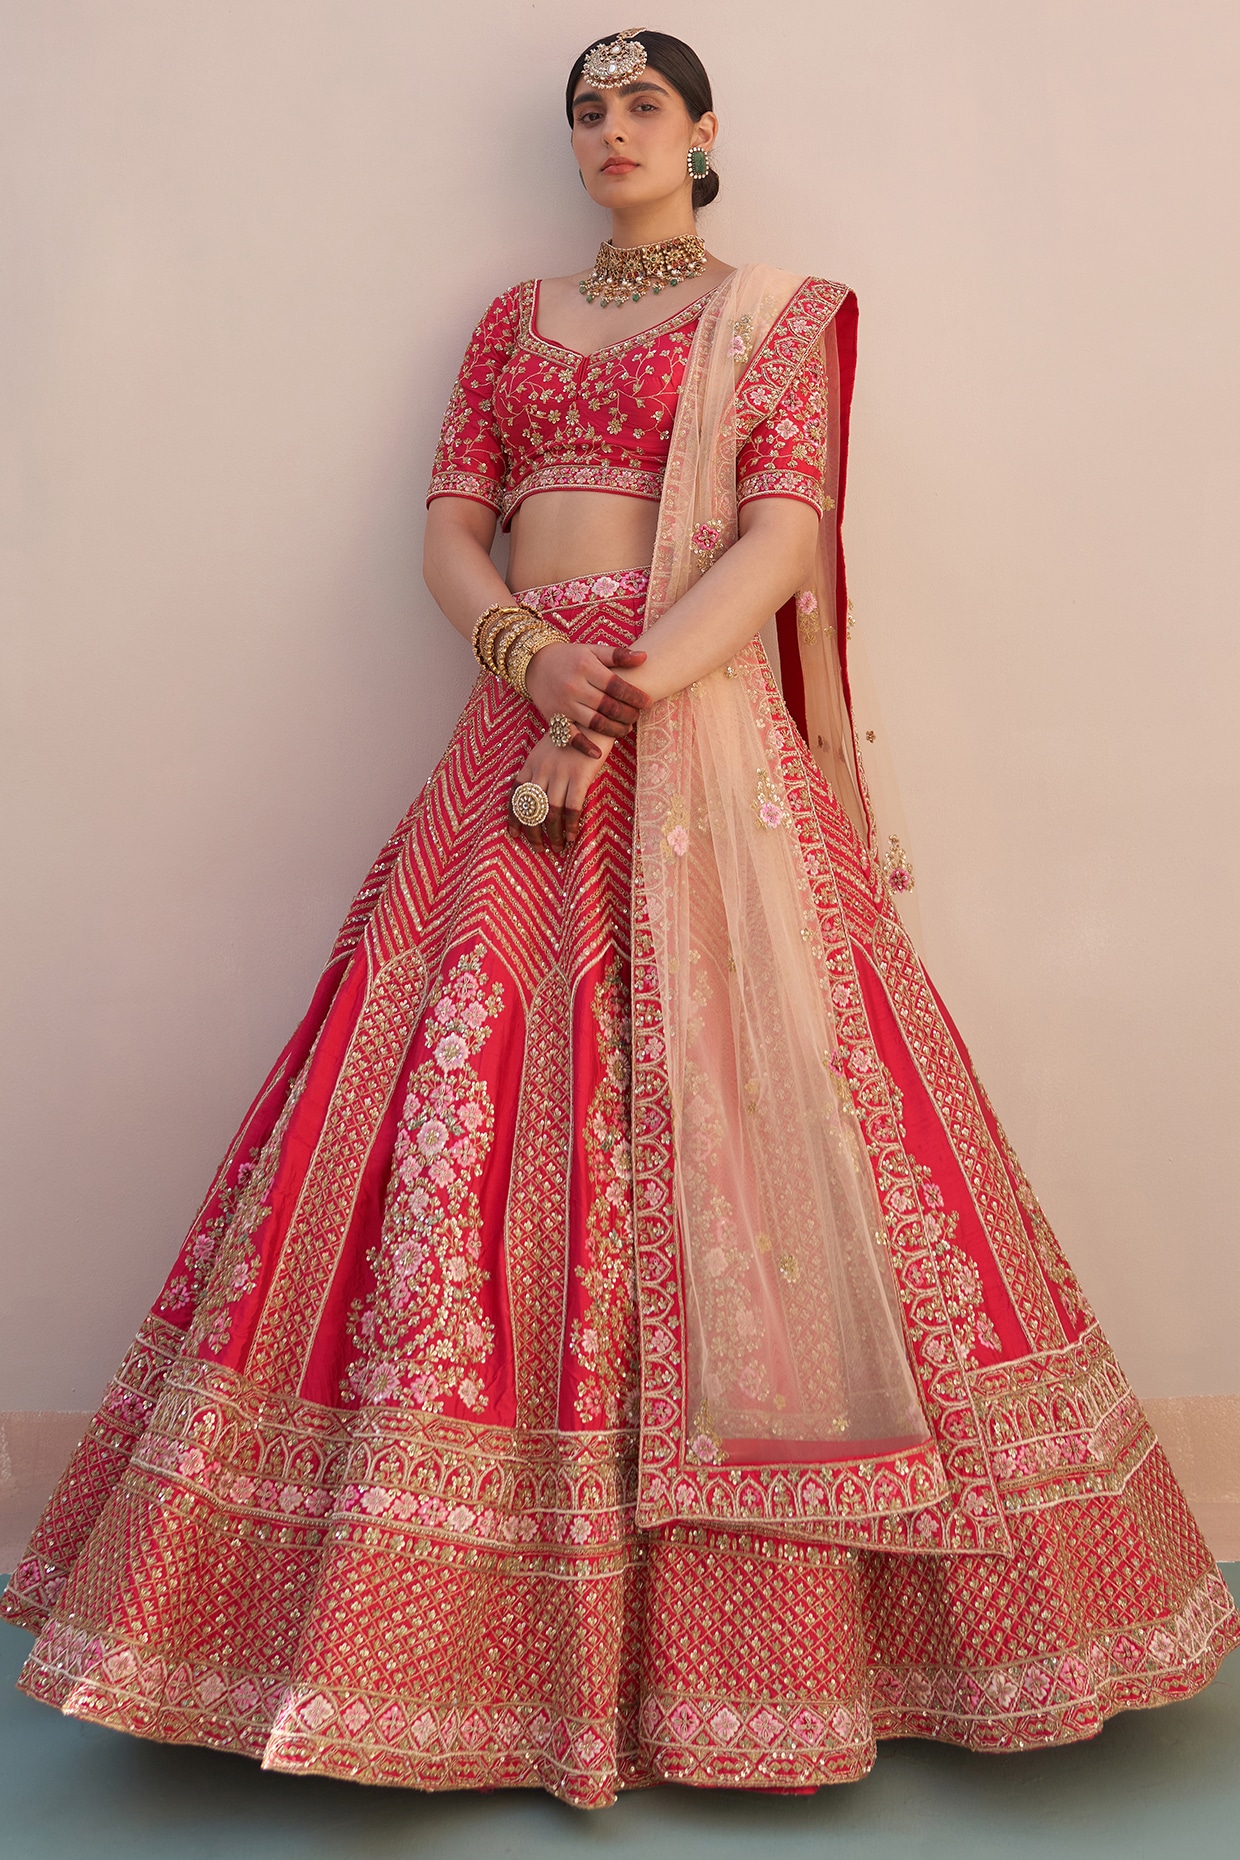 Pakistani Heavy wedding Designer Indian Party Bridal Ethnic LehengaCholi  wedding | eBay